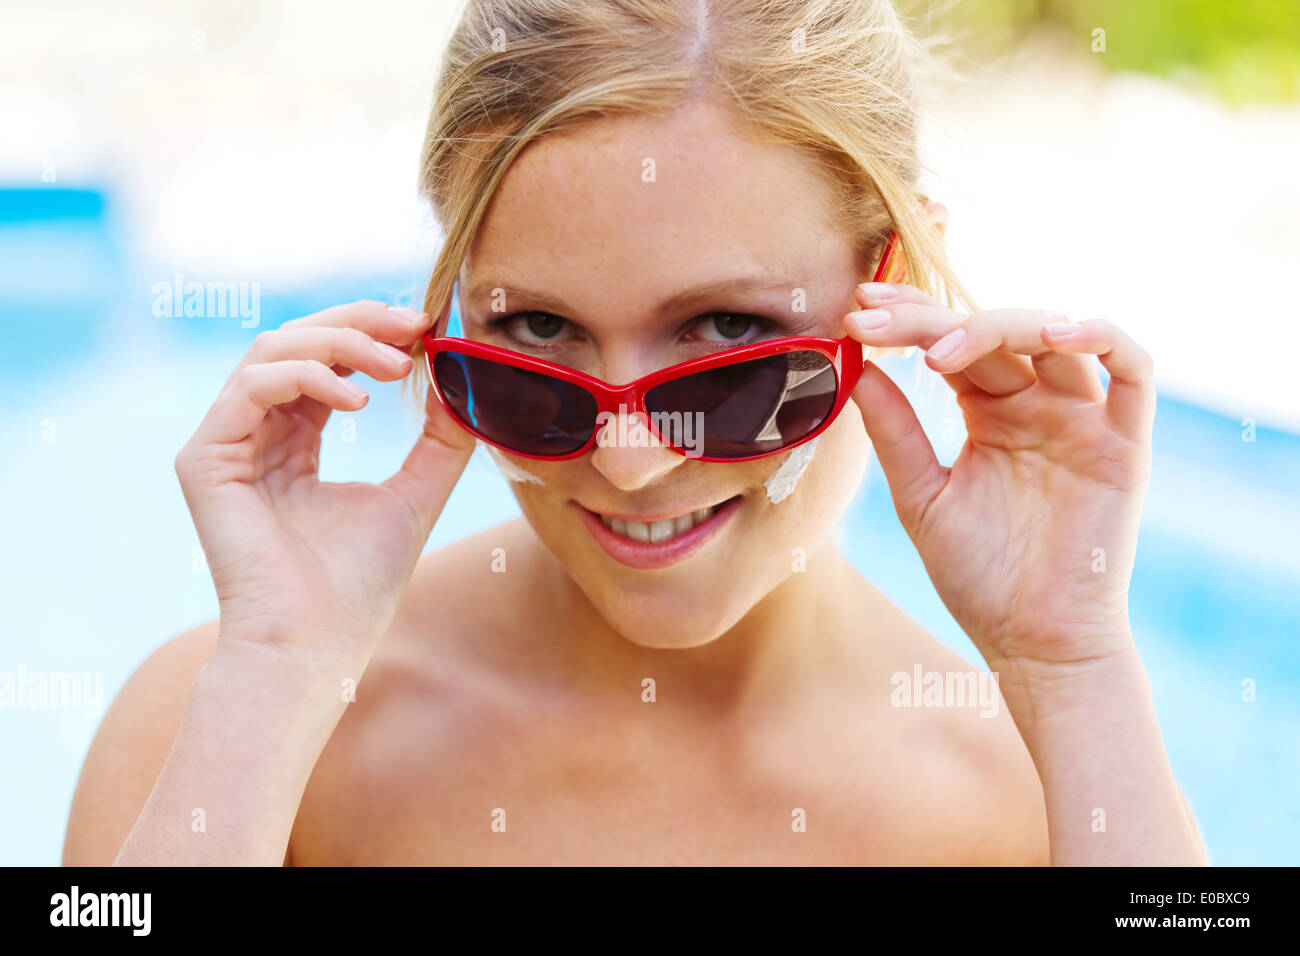 Mujer joven en verano con gafas de sol y crema de los Suns, Junge Frau Im Sommer mit Sonnenbrille und Sonnen Creme Foto de stock